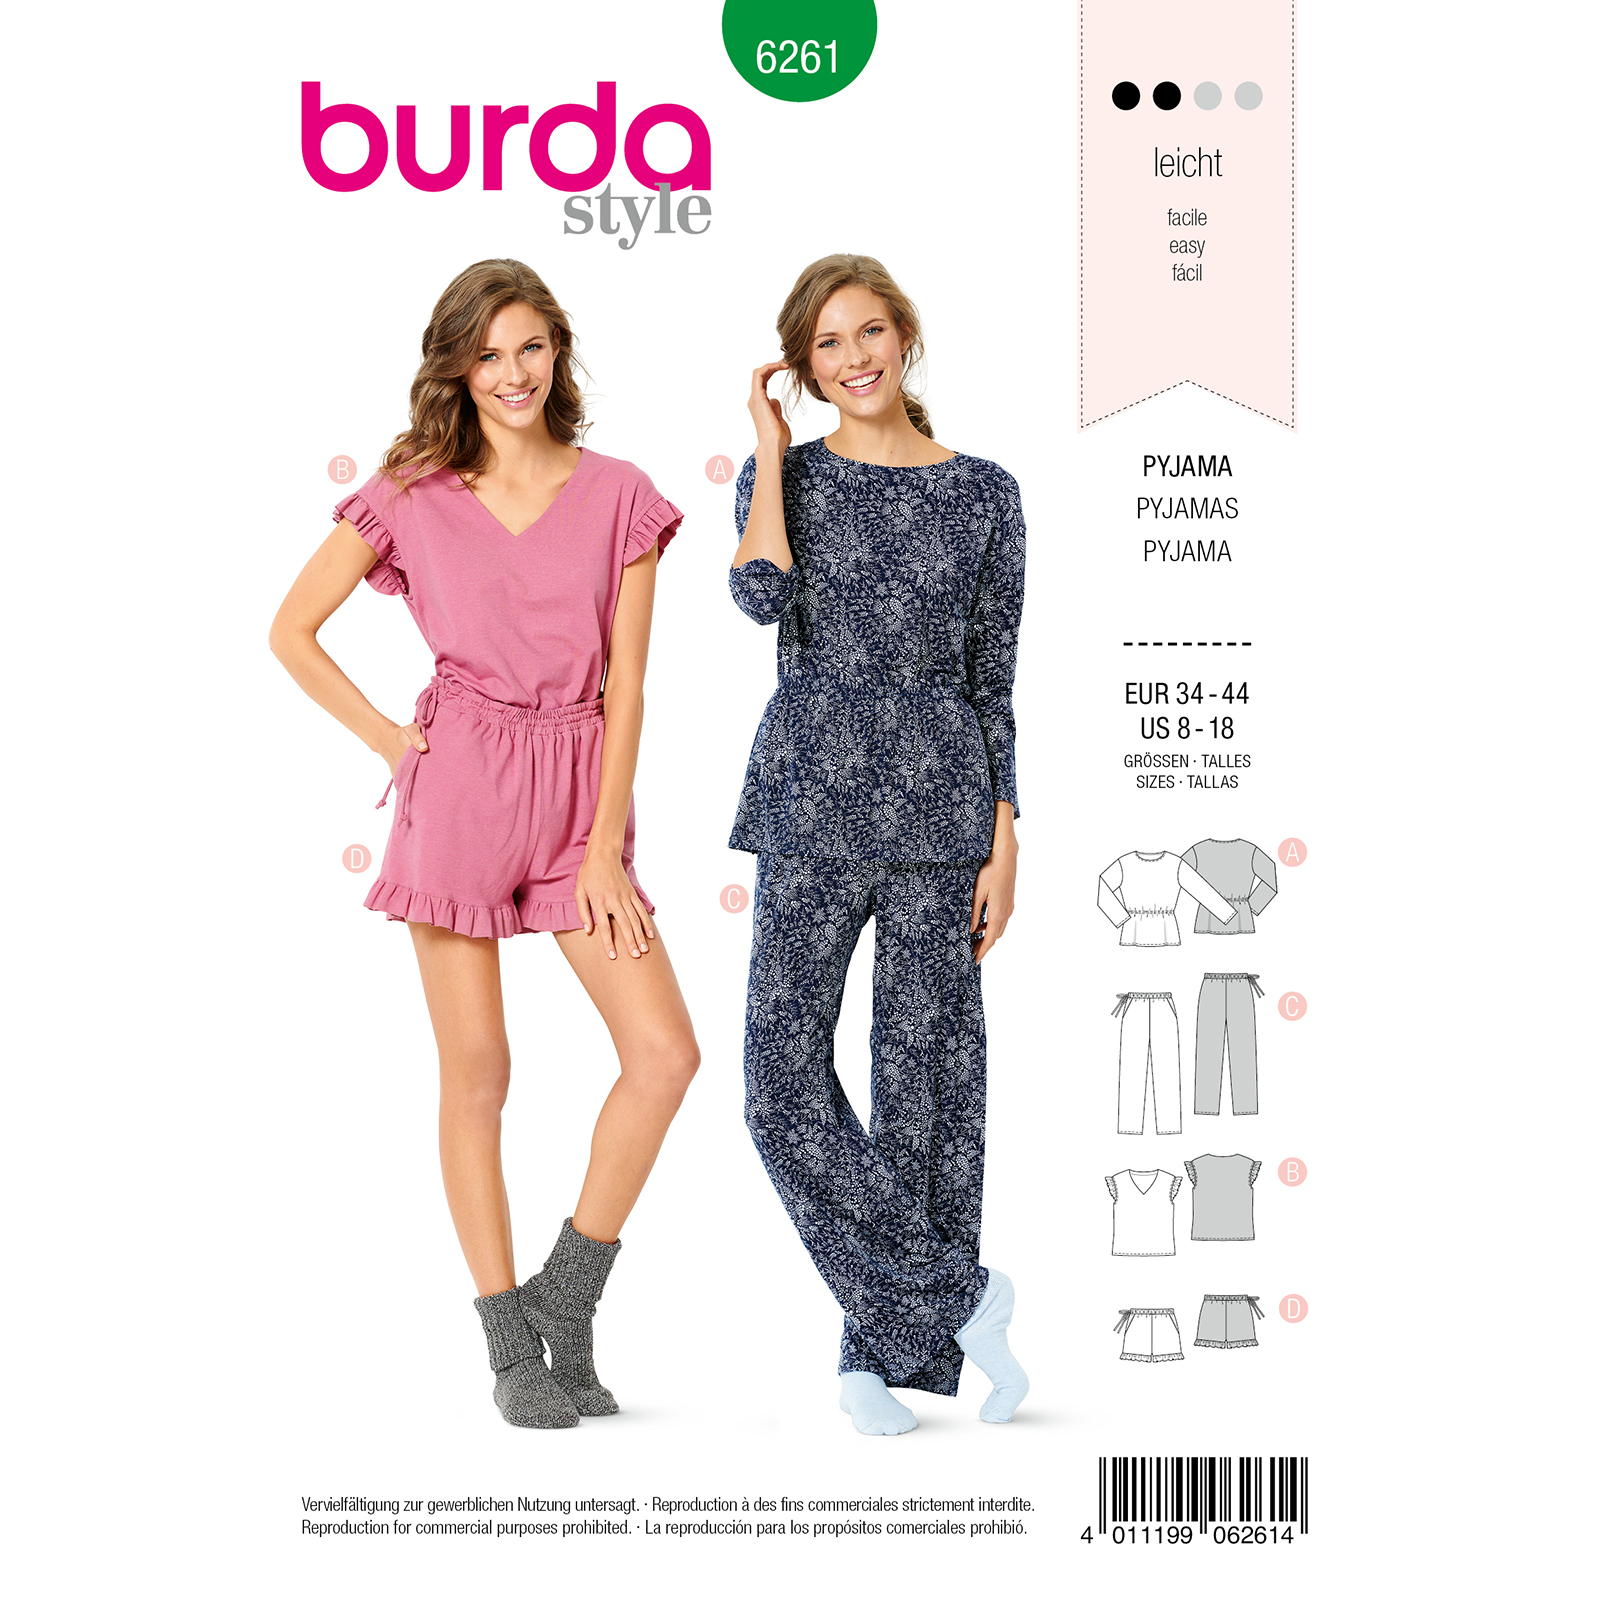 Burda Groen 6261 - Pyjama in Variaties